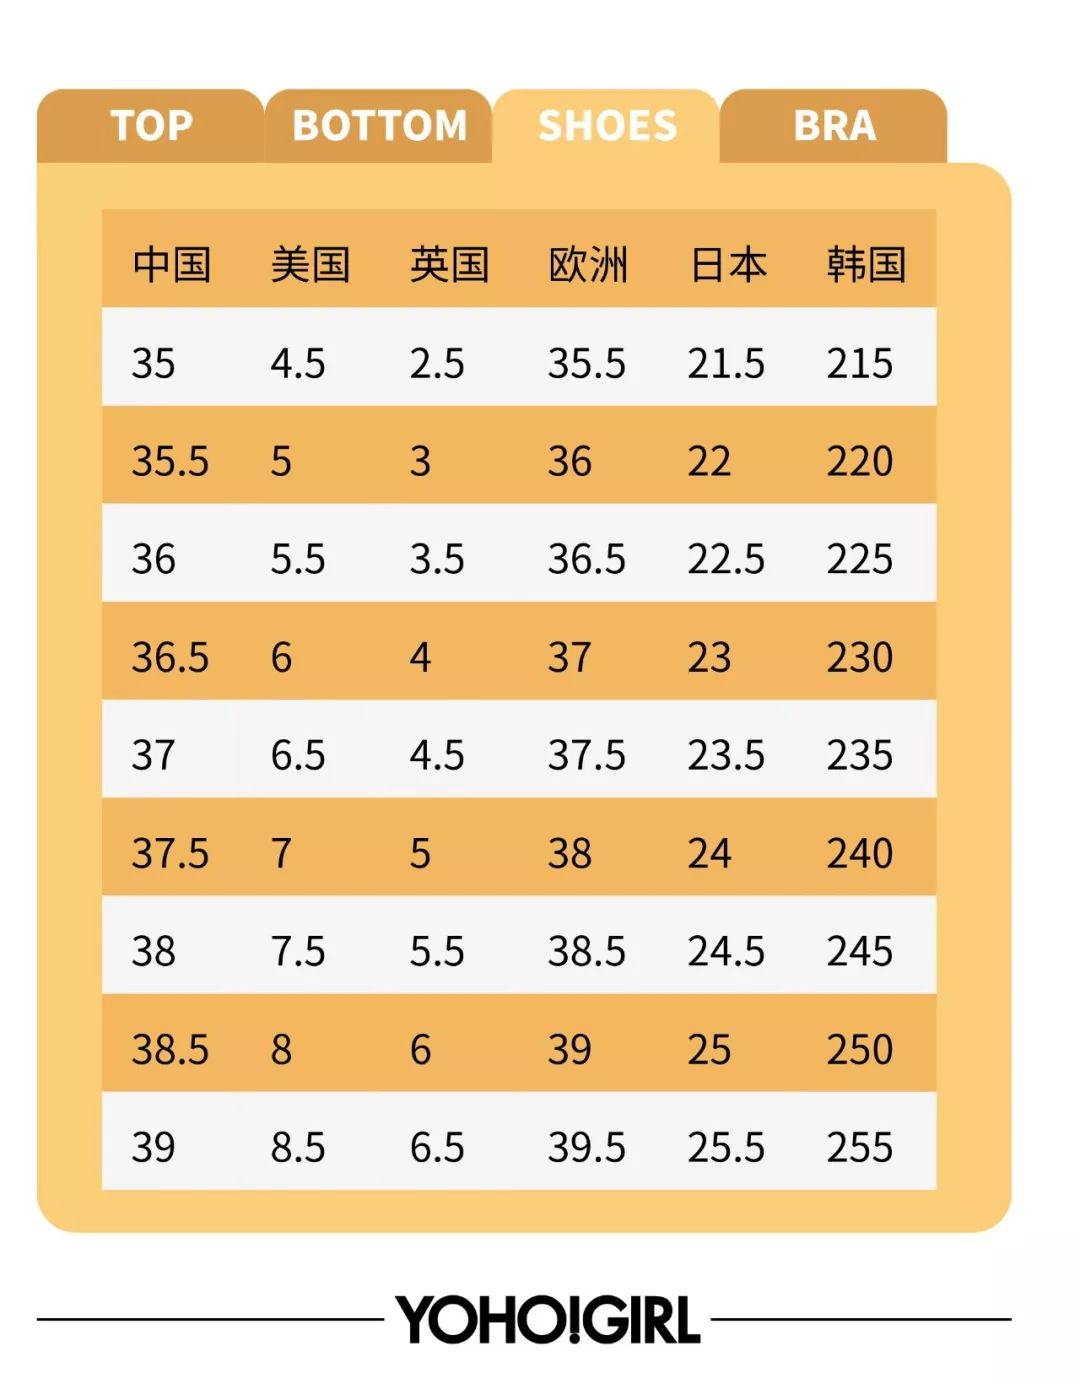 日本尺码对照表\x20女士 日本尺码对照表衣服 -自媒体热点